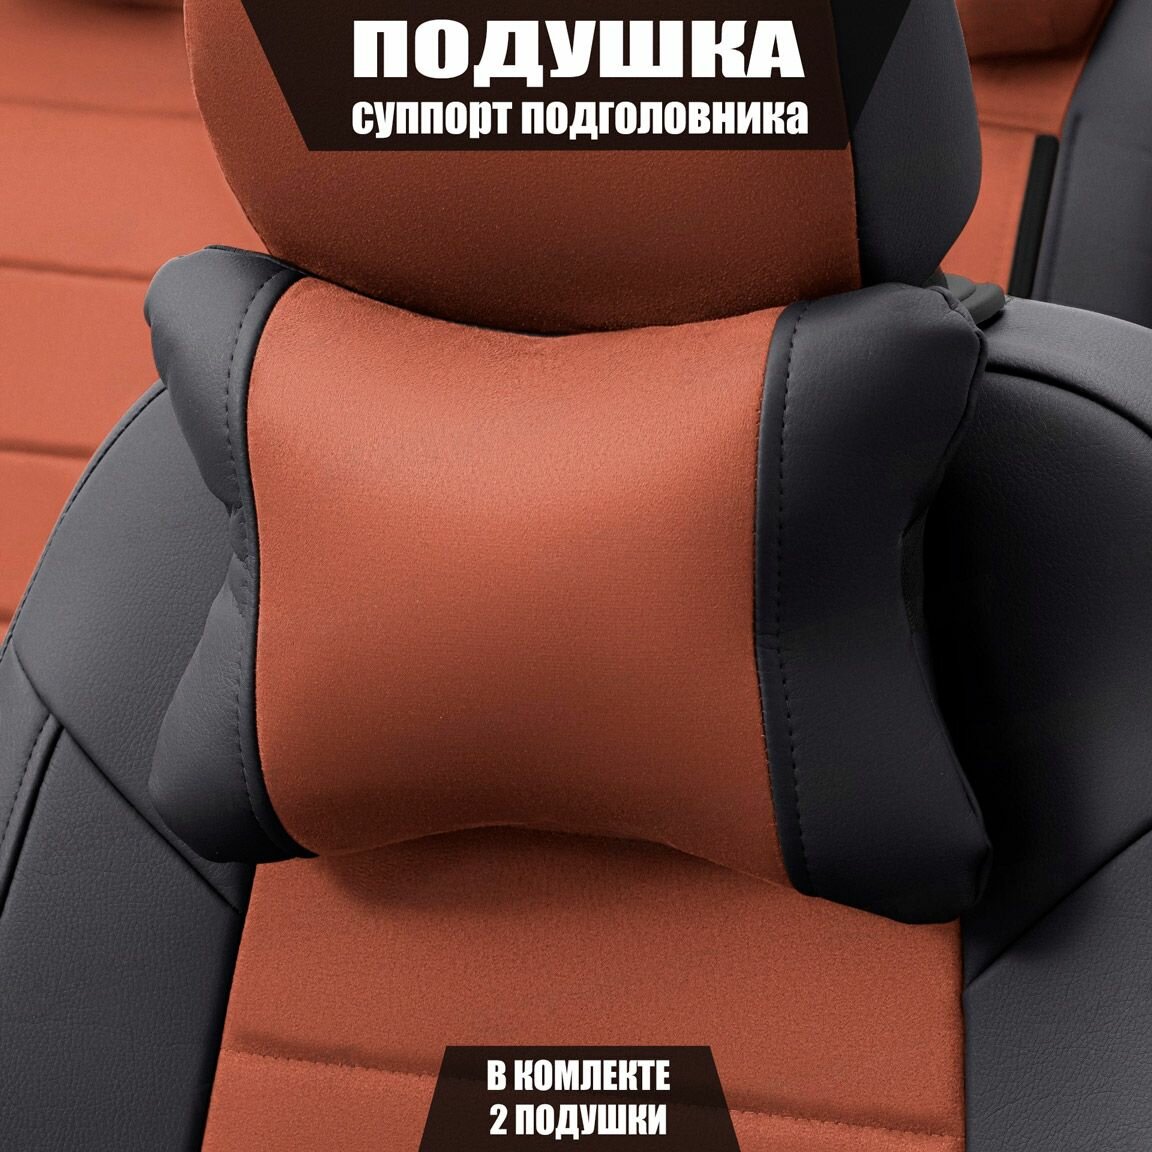 Подушки под шею (суппорт подголовника) для Хендай Элантра (2015 - 2019) седан / Hyundai Elantra Алькантара 2 подушки Коричневый